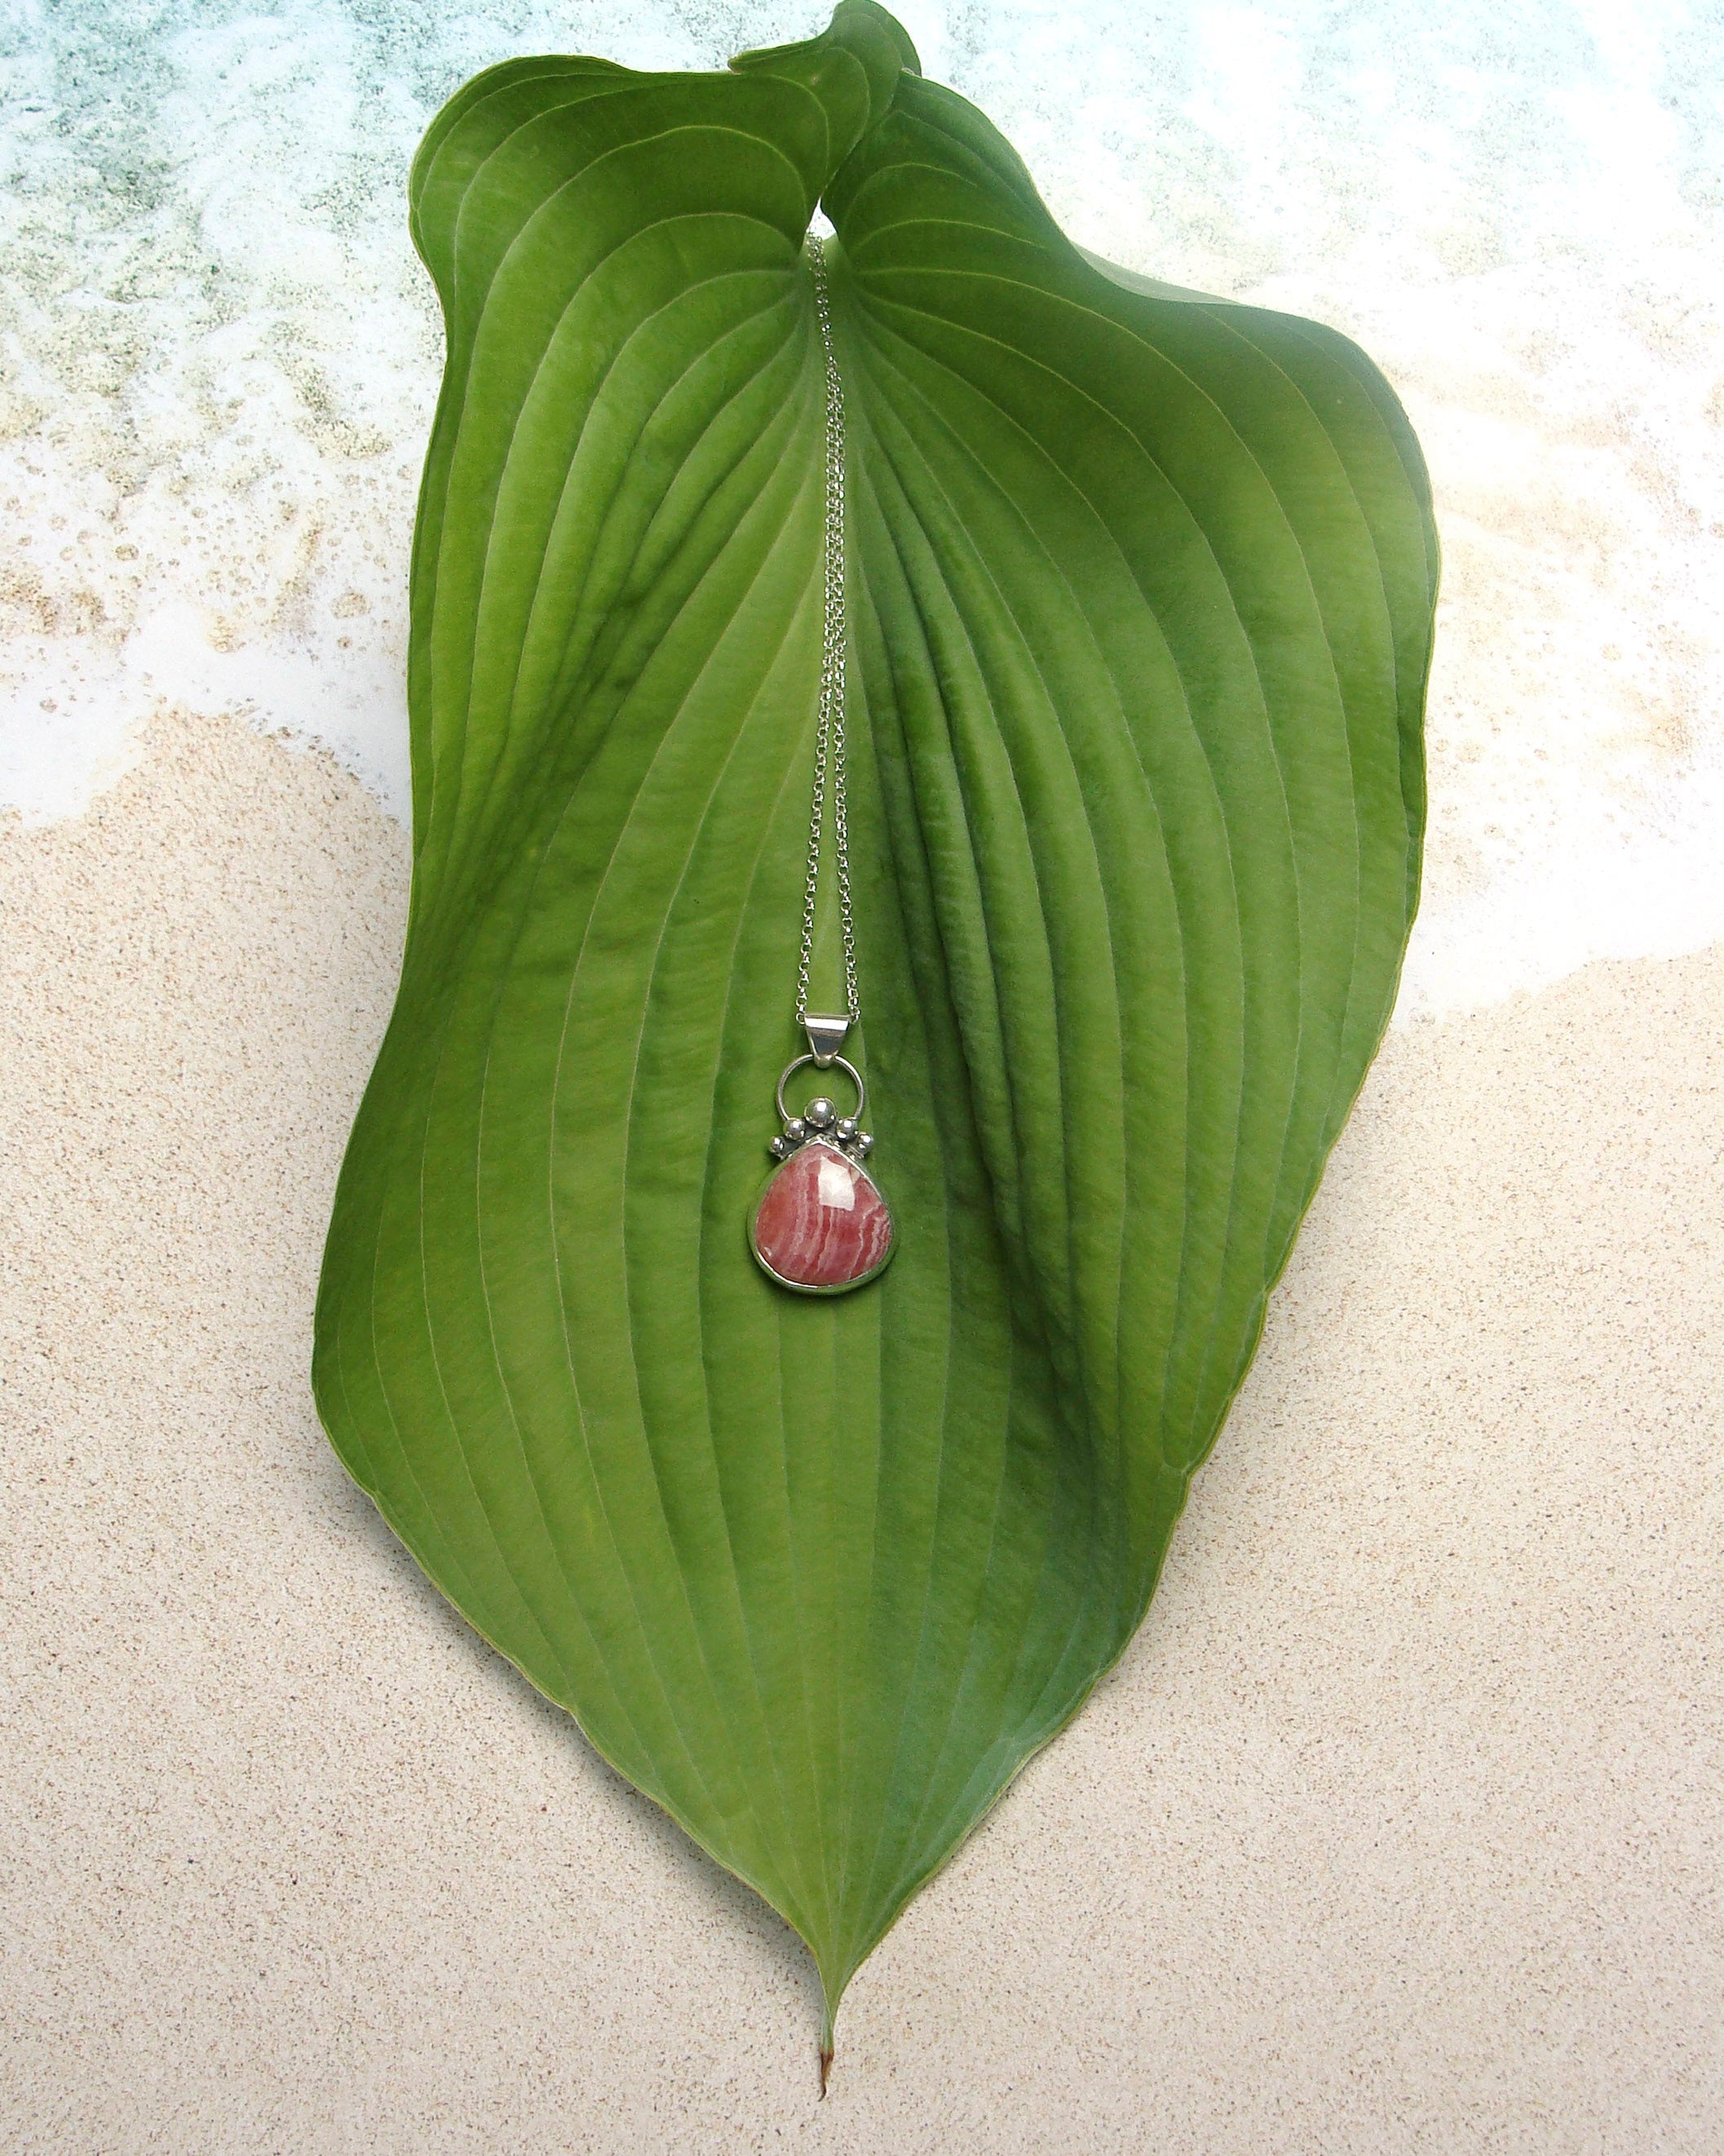 pear-shaped rhodochrosite pendant on leaf flatlay